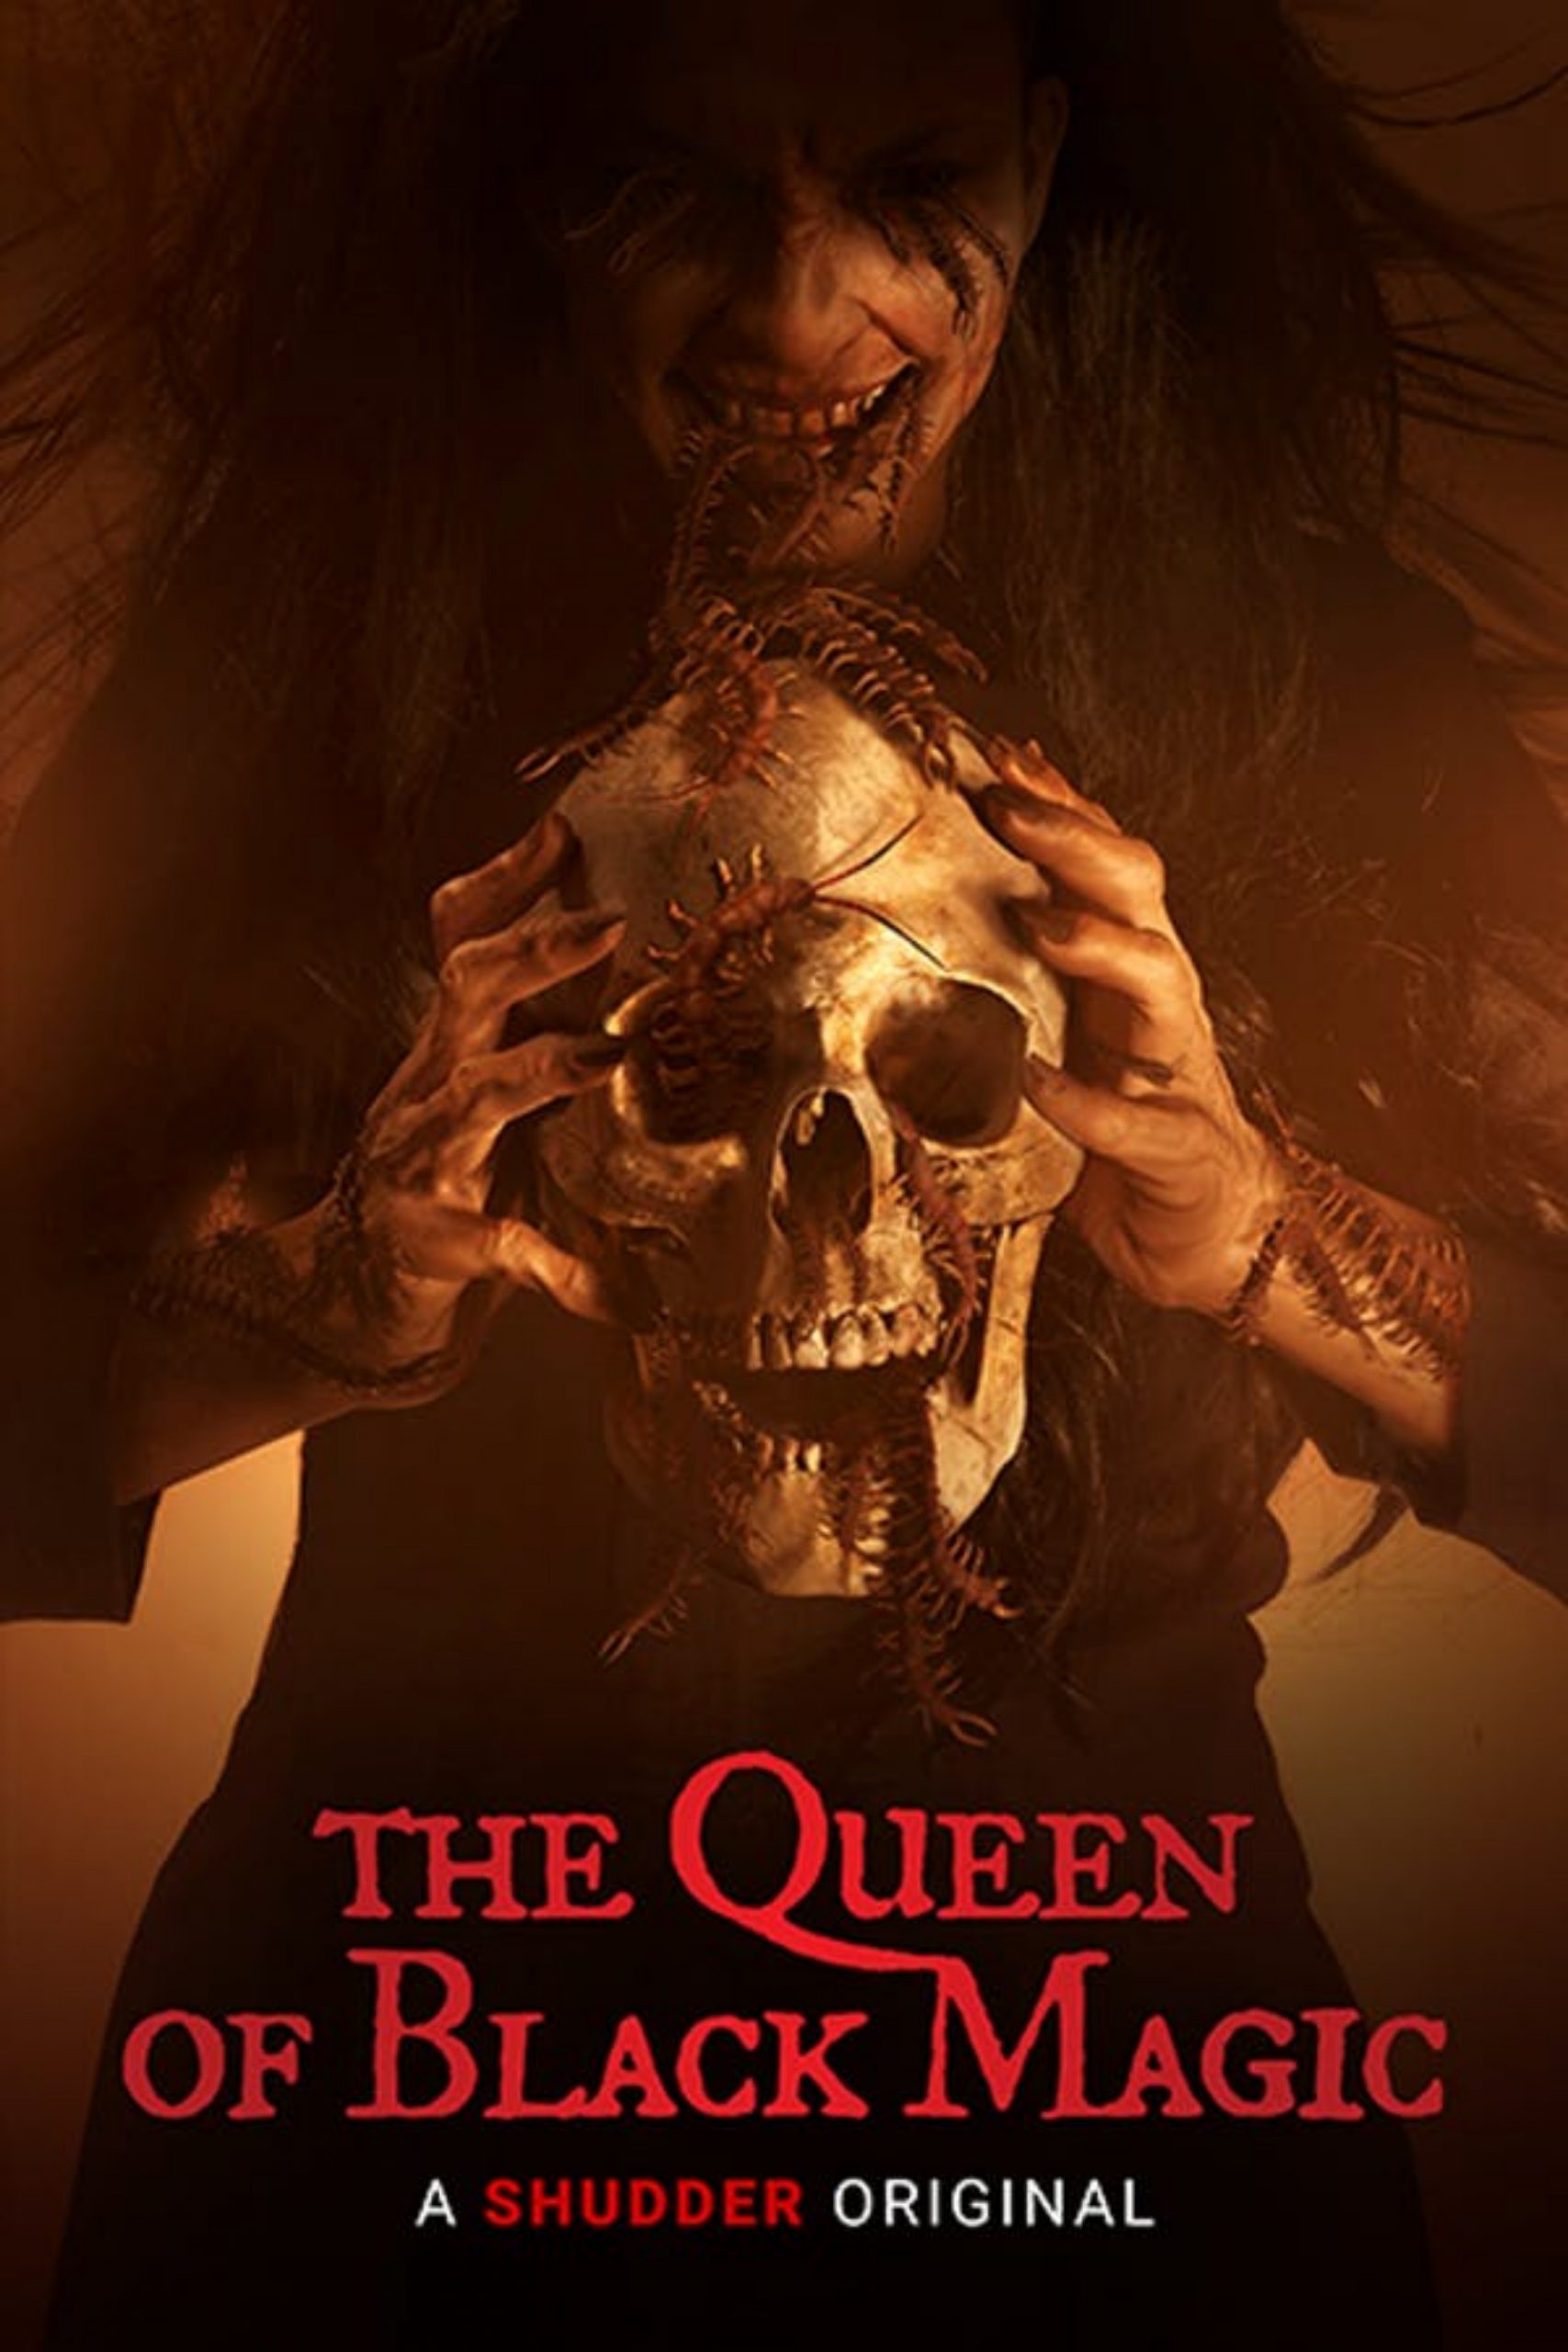 1-فیلم ملکه جادو سیاه 2021 The Queen of Black Magic: بهترین فیلم ترسناک سال 2021 به انتخاب روکیدا!